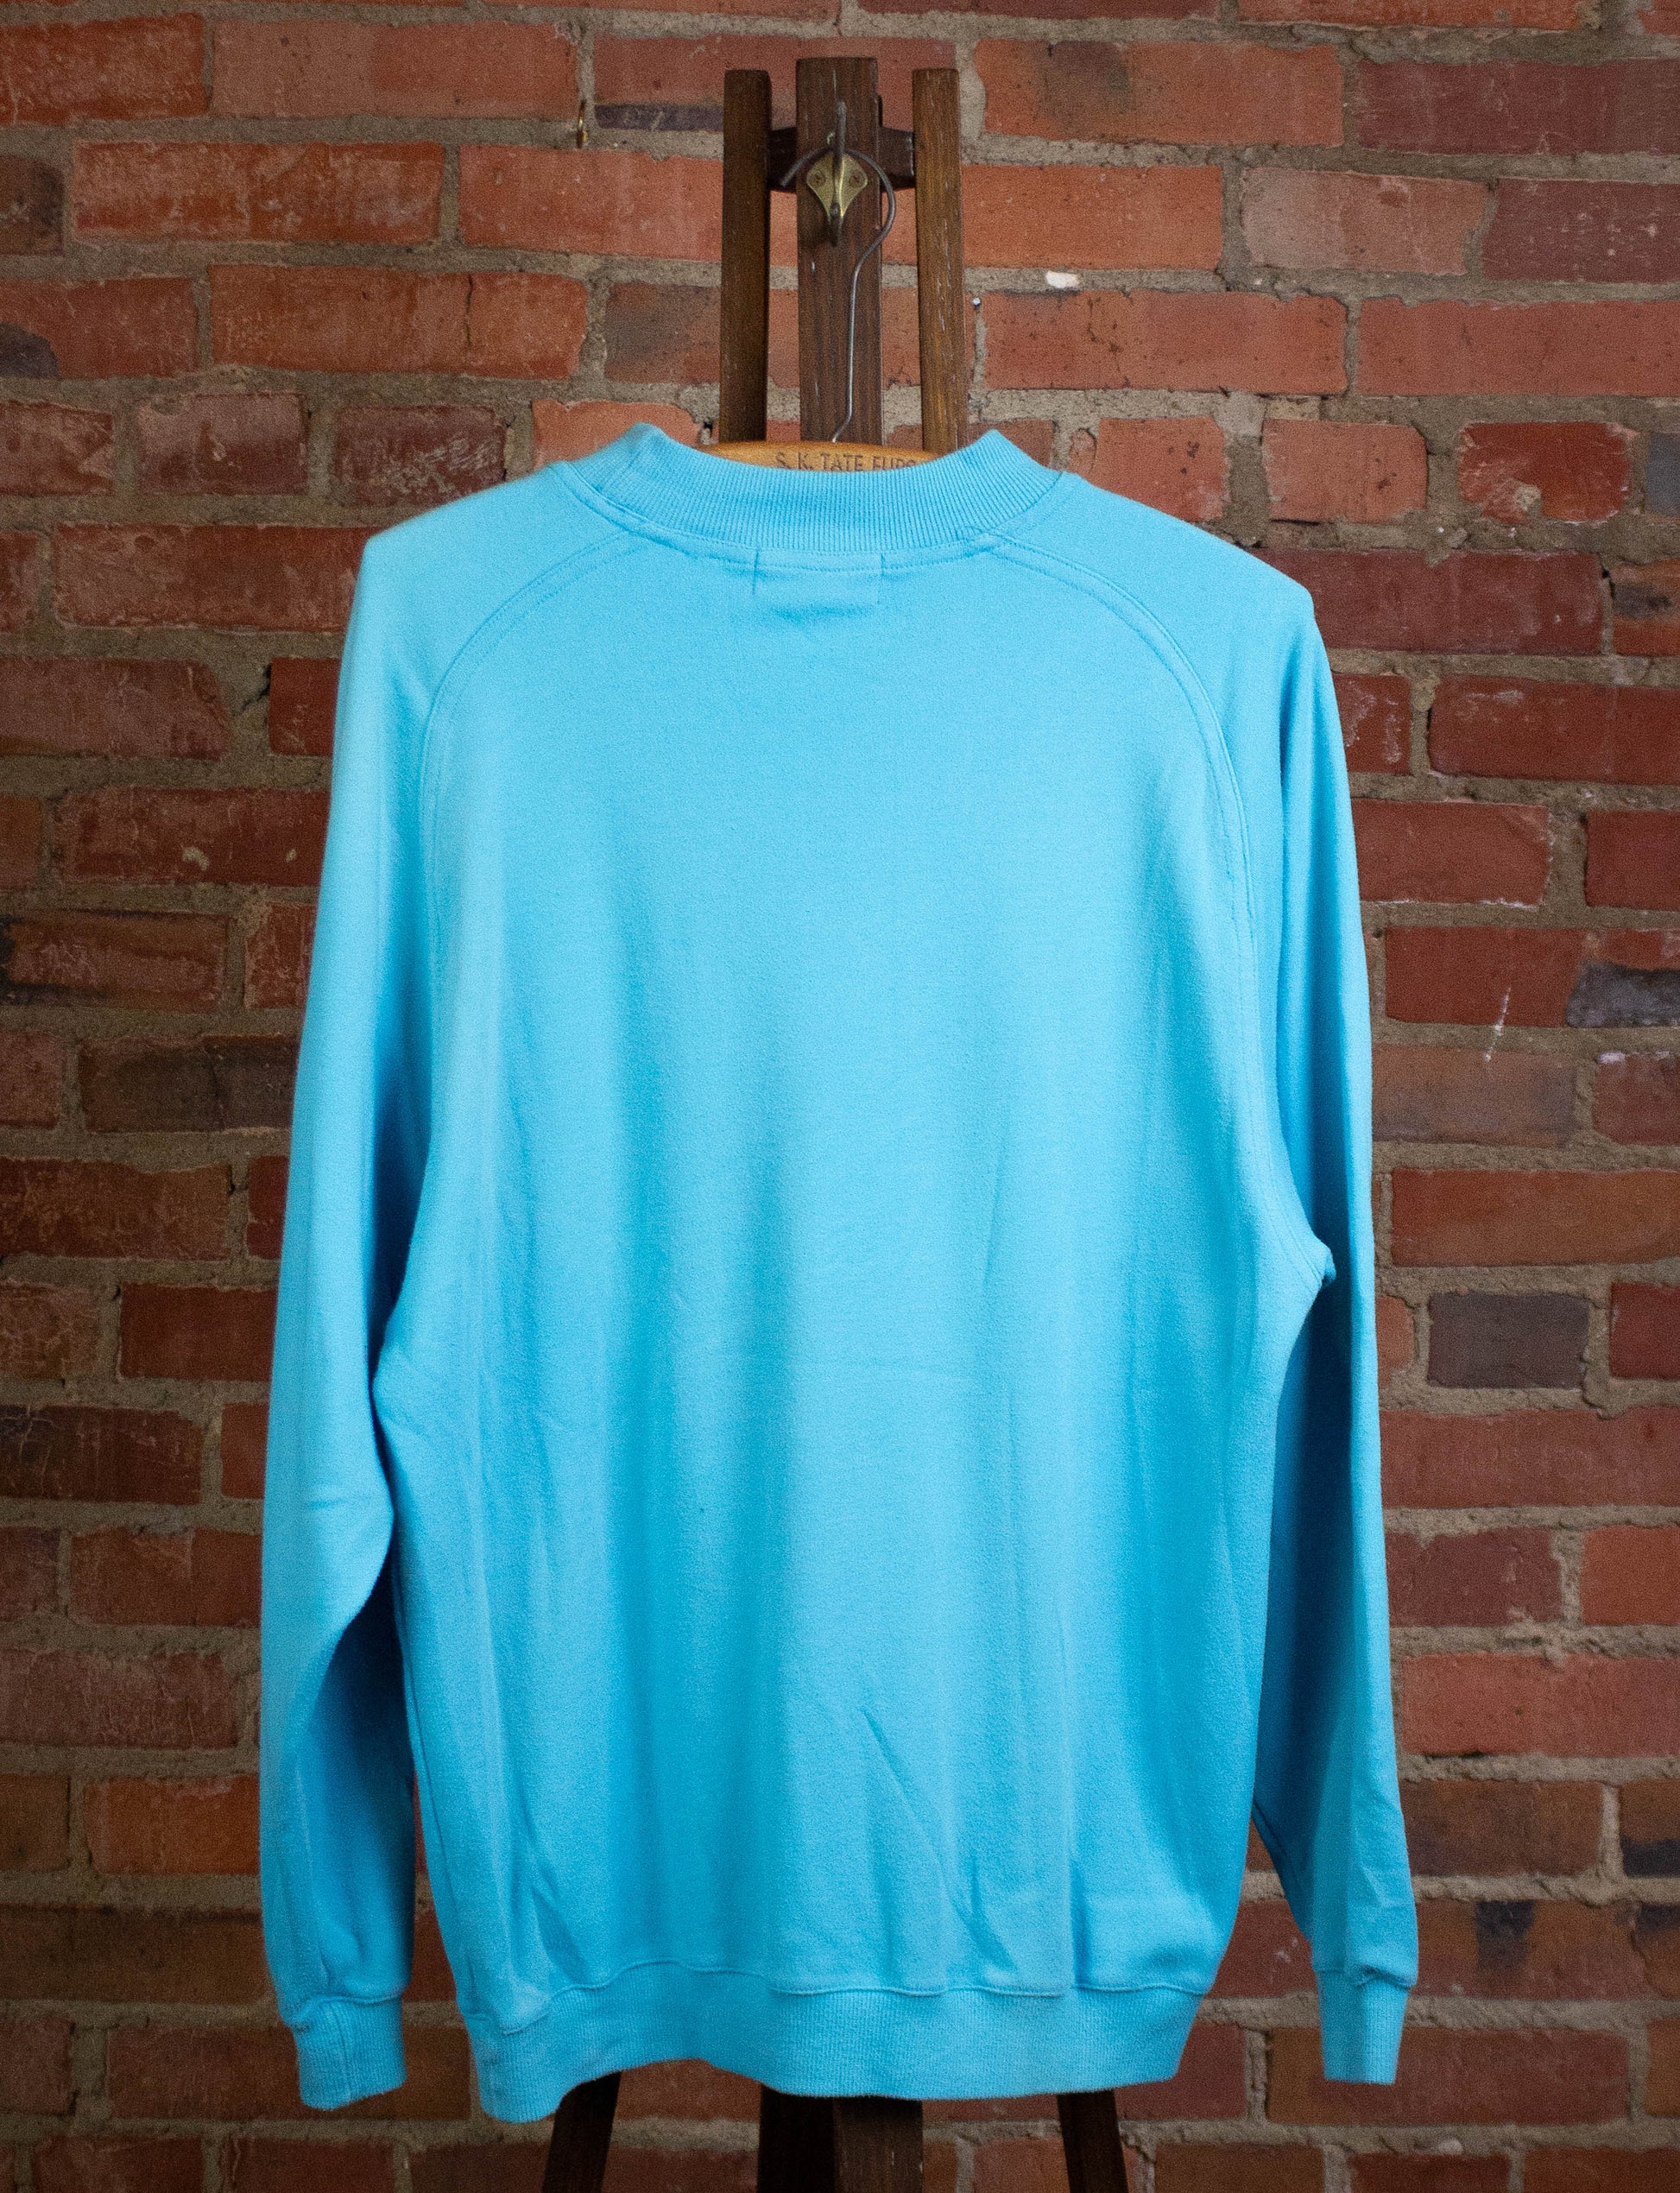 Vintage IOU 1988 Sweatshirt Blue Large